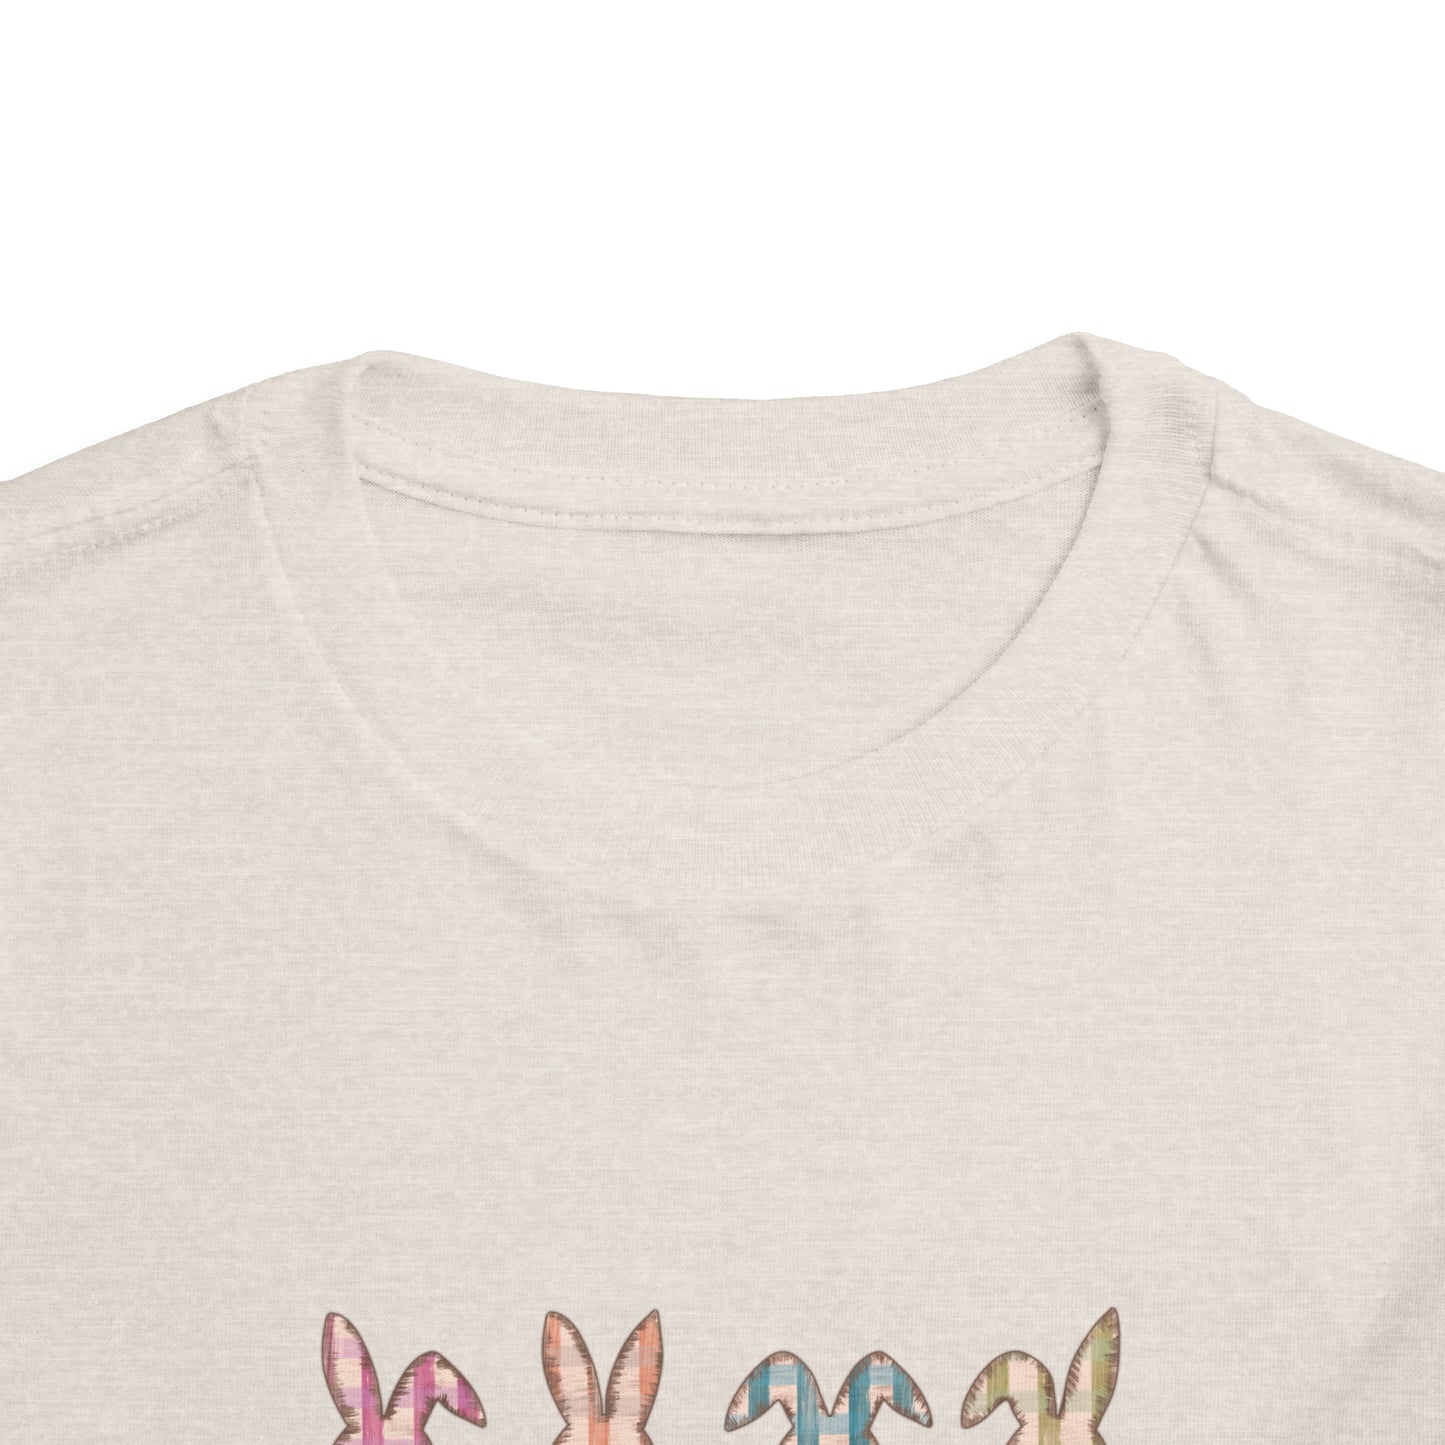 Hoppy Easter shirt